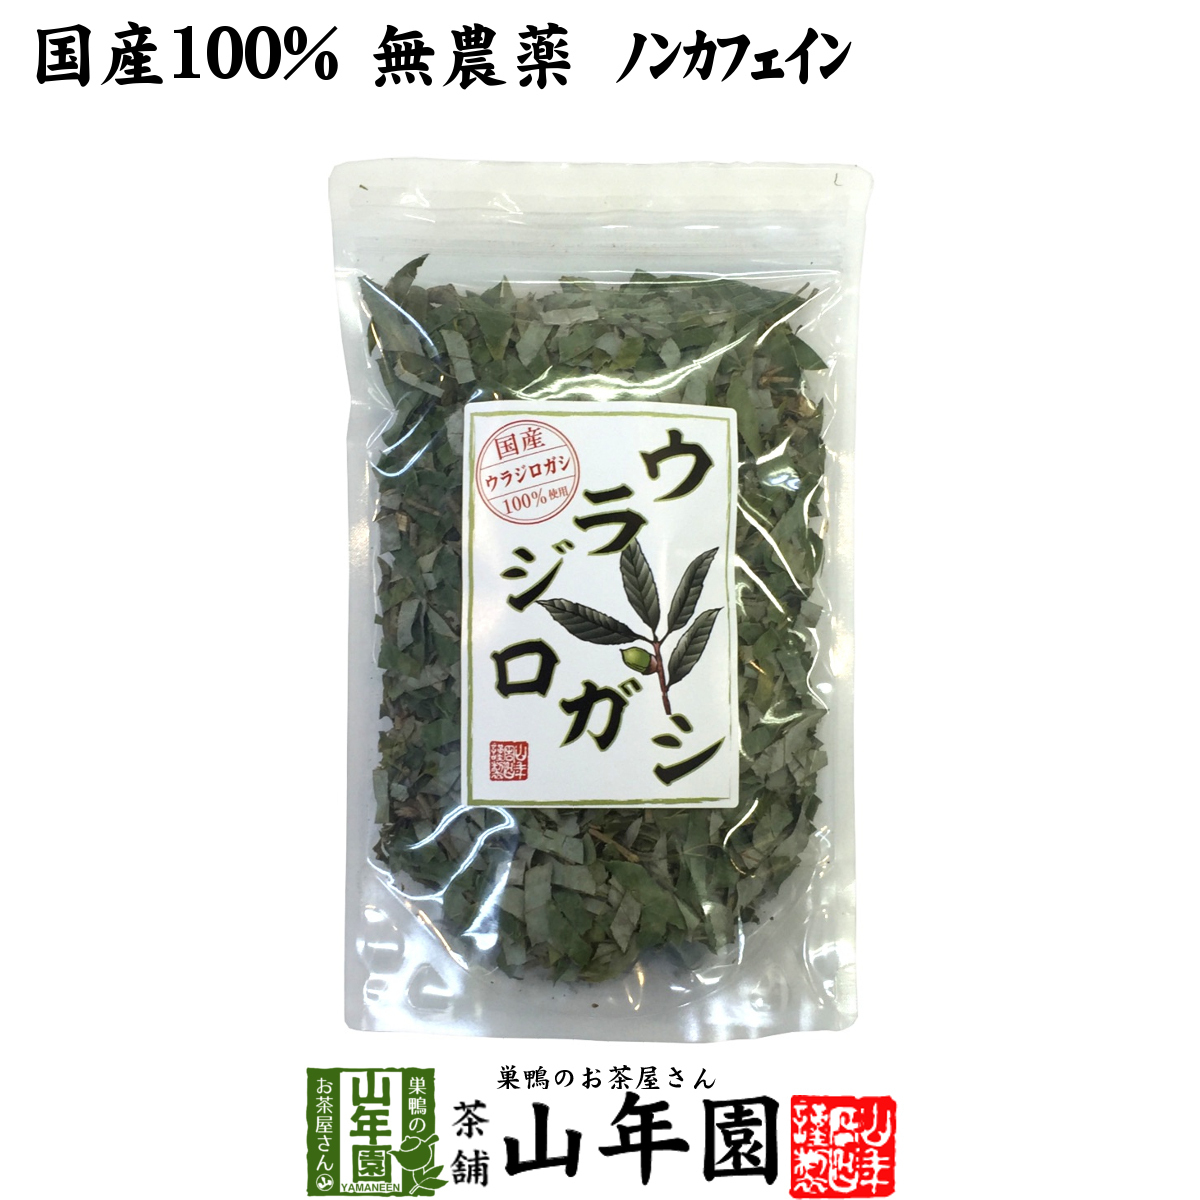 Здоровый чай 100% Vladilogashi чай 100 г некафеина без пестицидов Без пестицидов доставка из префектуры Миядзаки